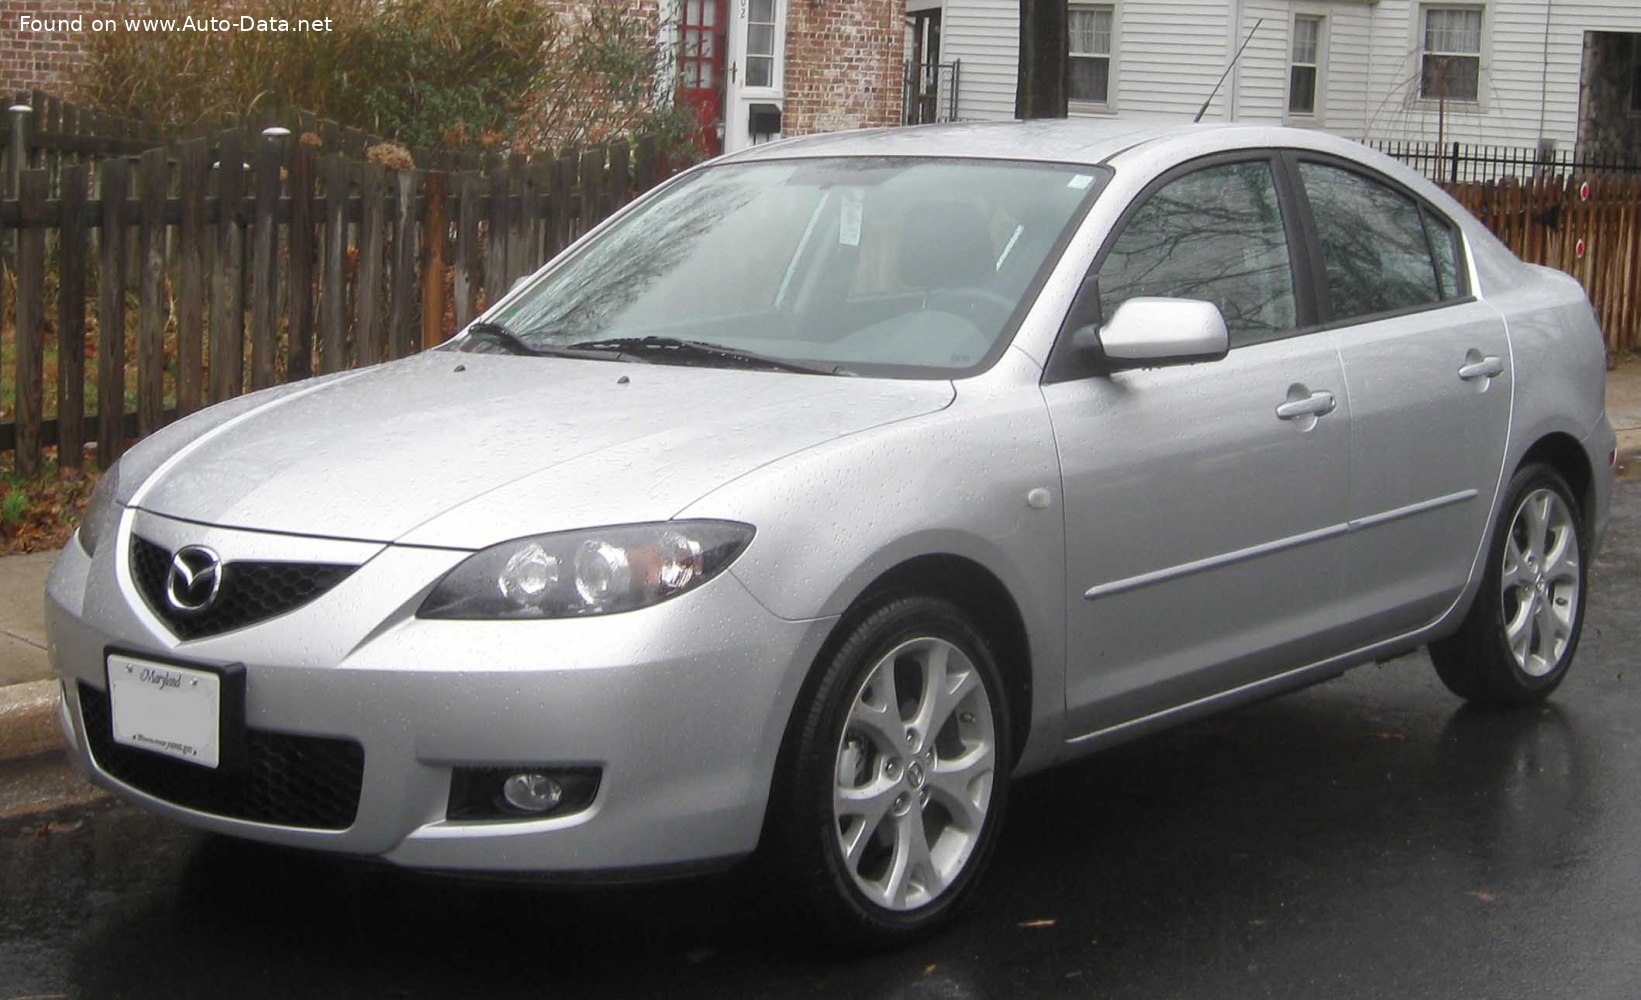 https://www.auto-data.net/images/f52/Mazda-3-I-Sedan-BK-facelift-2006.jpg